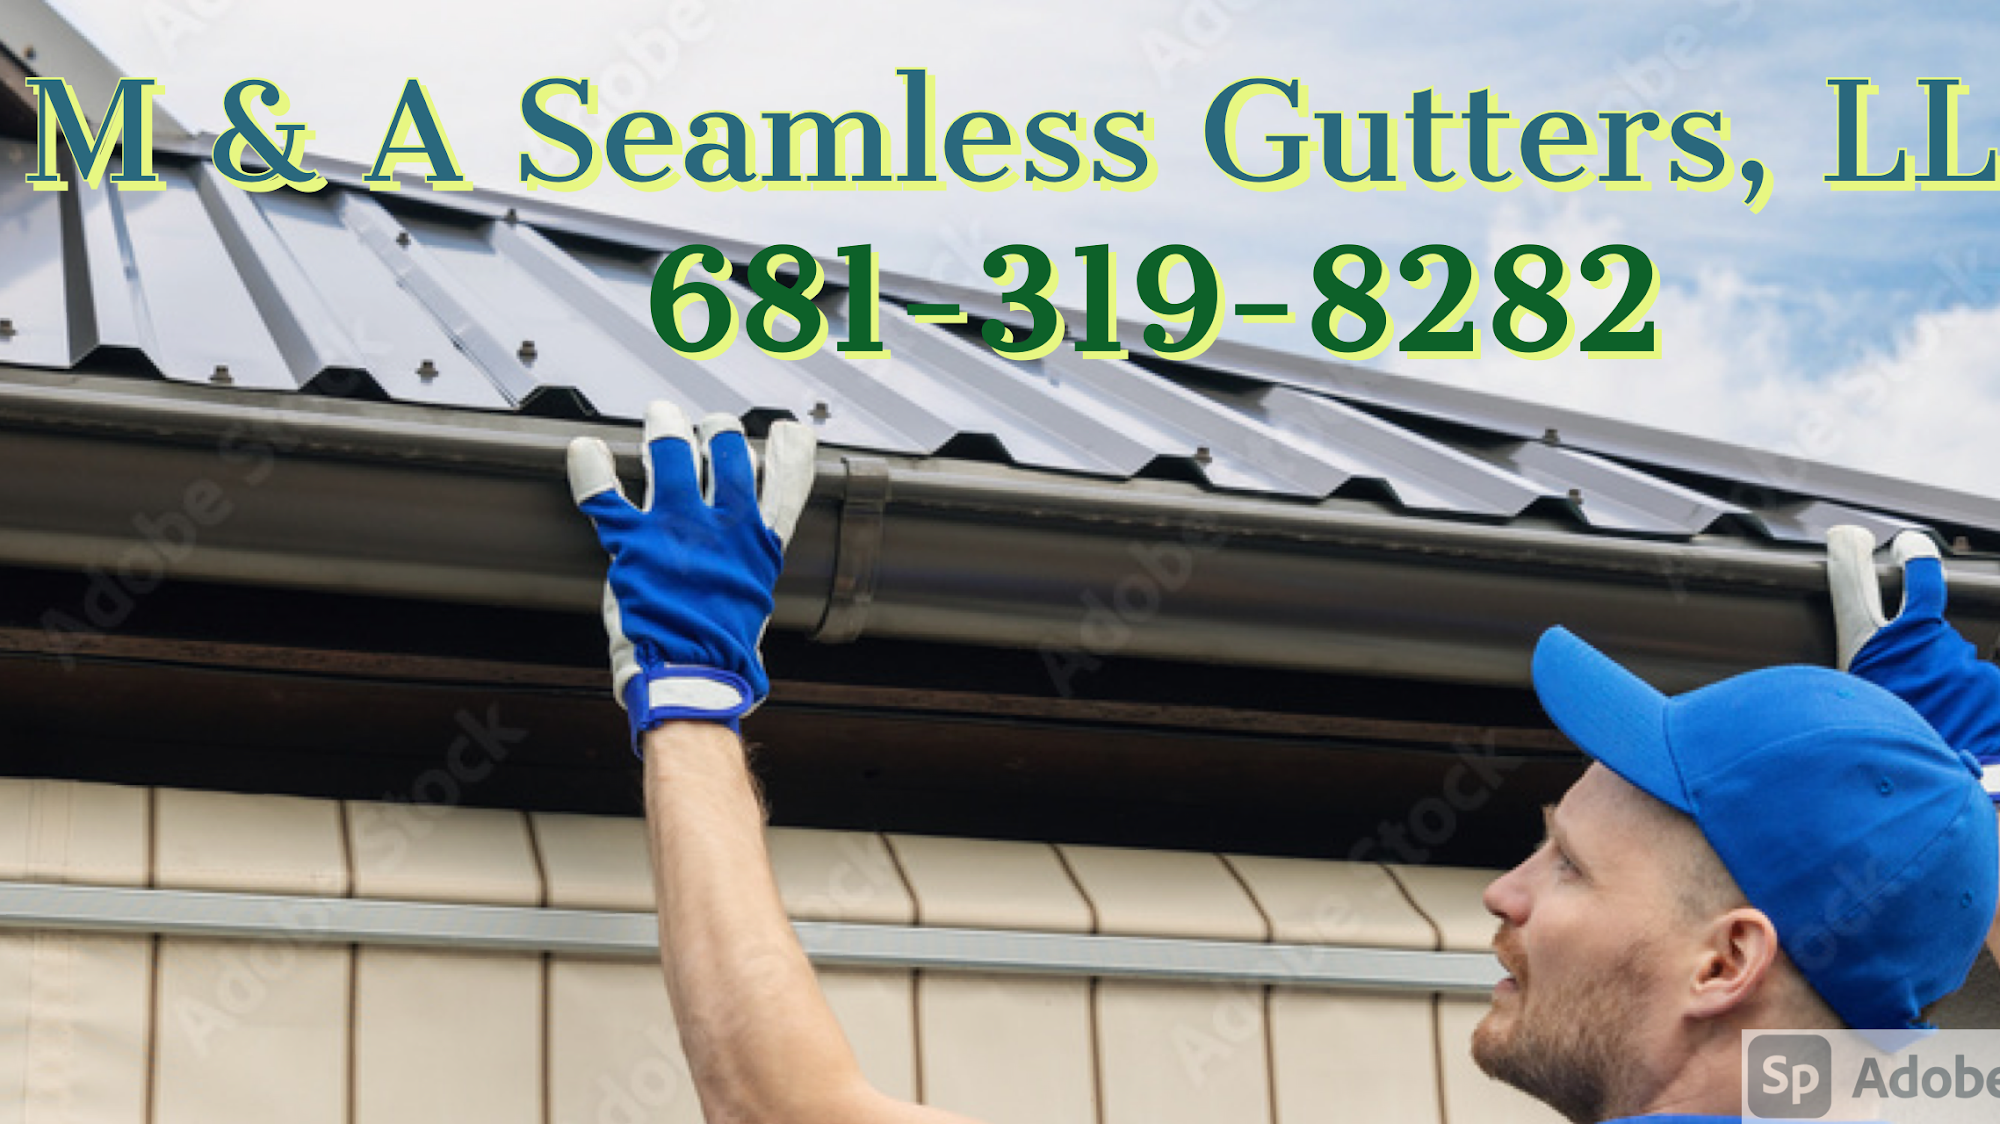 M & A Seamless Gutter & Construction Services